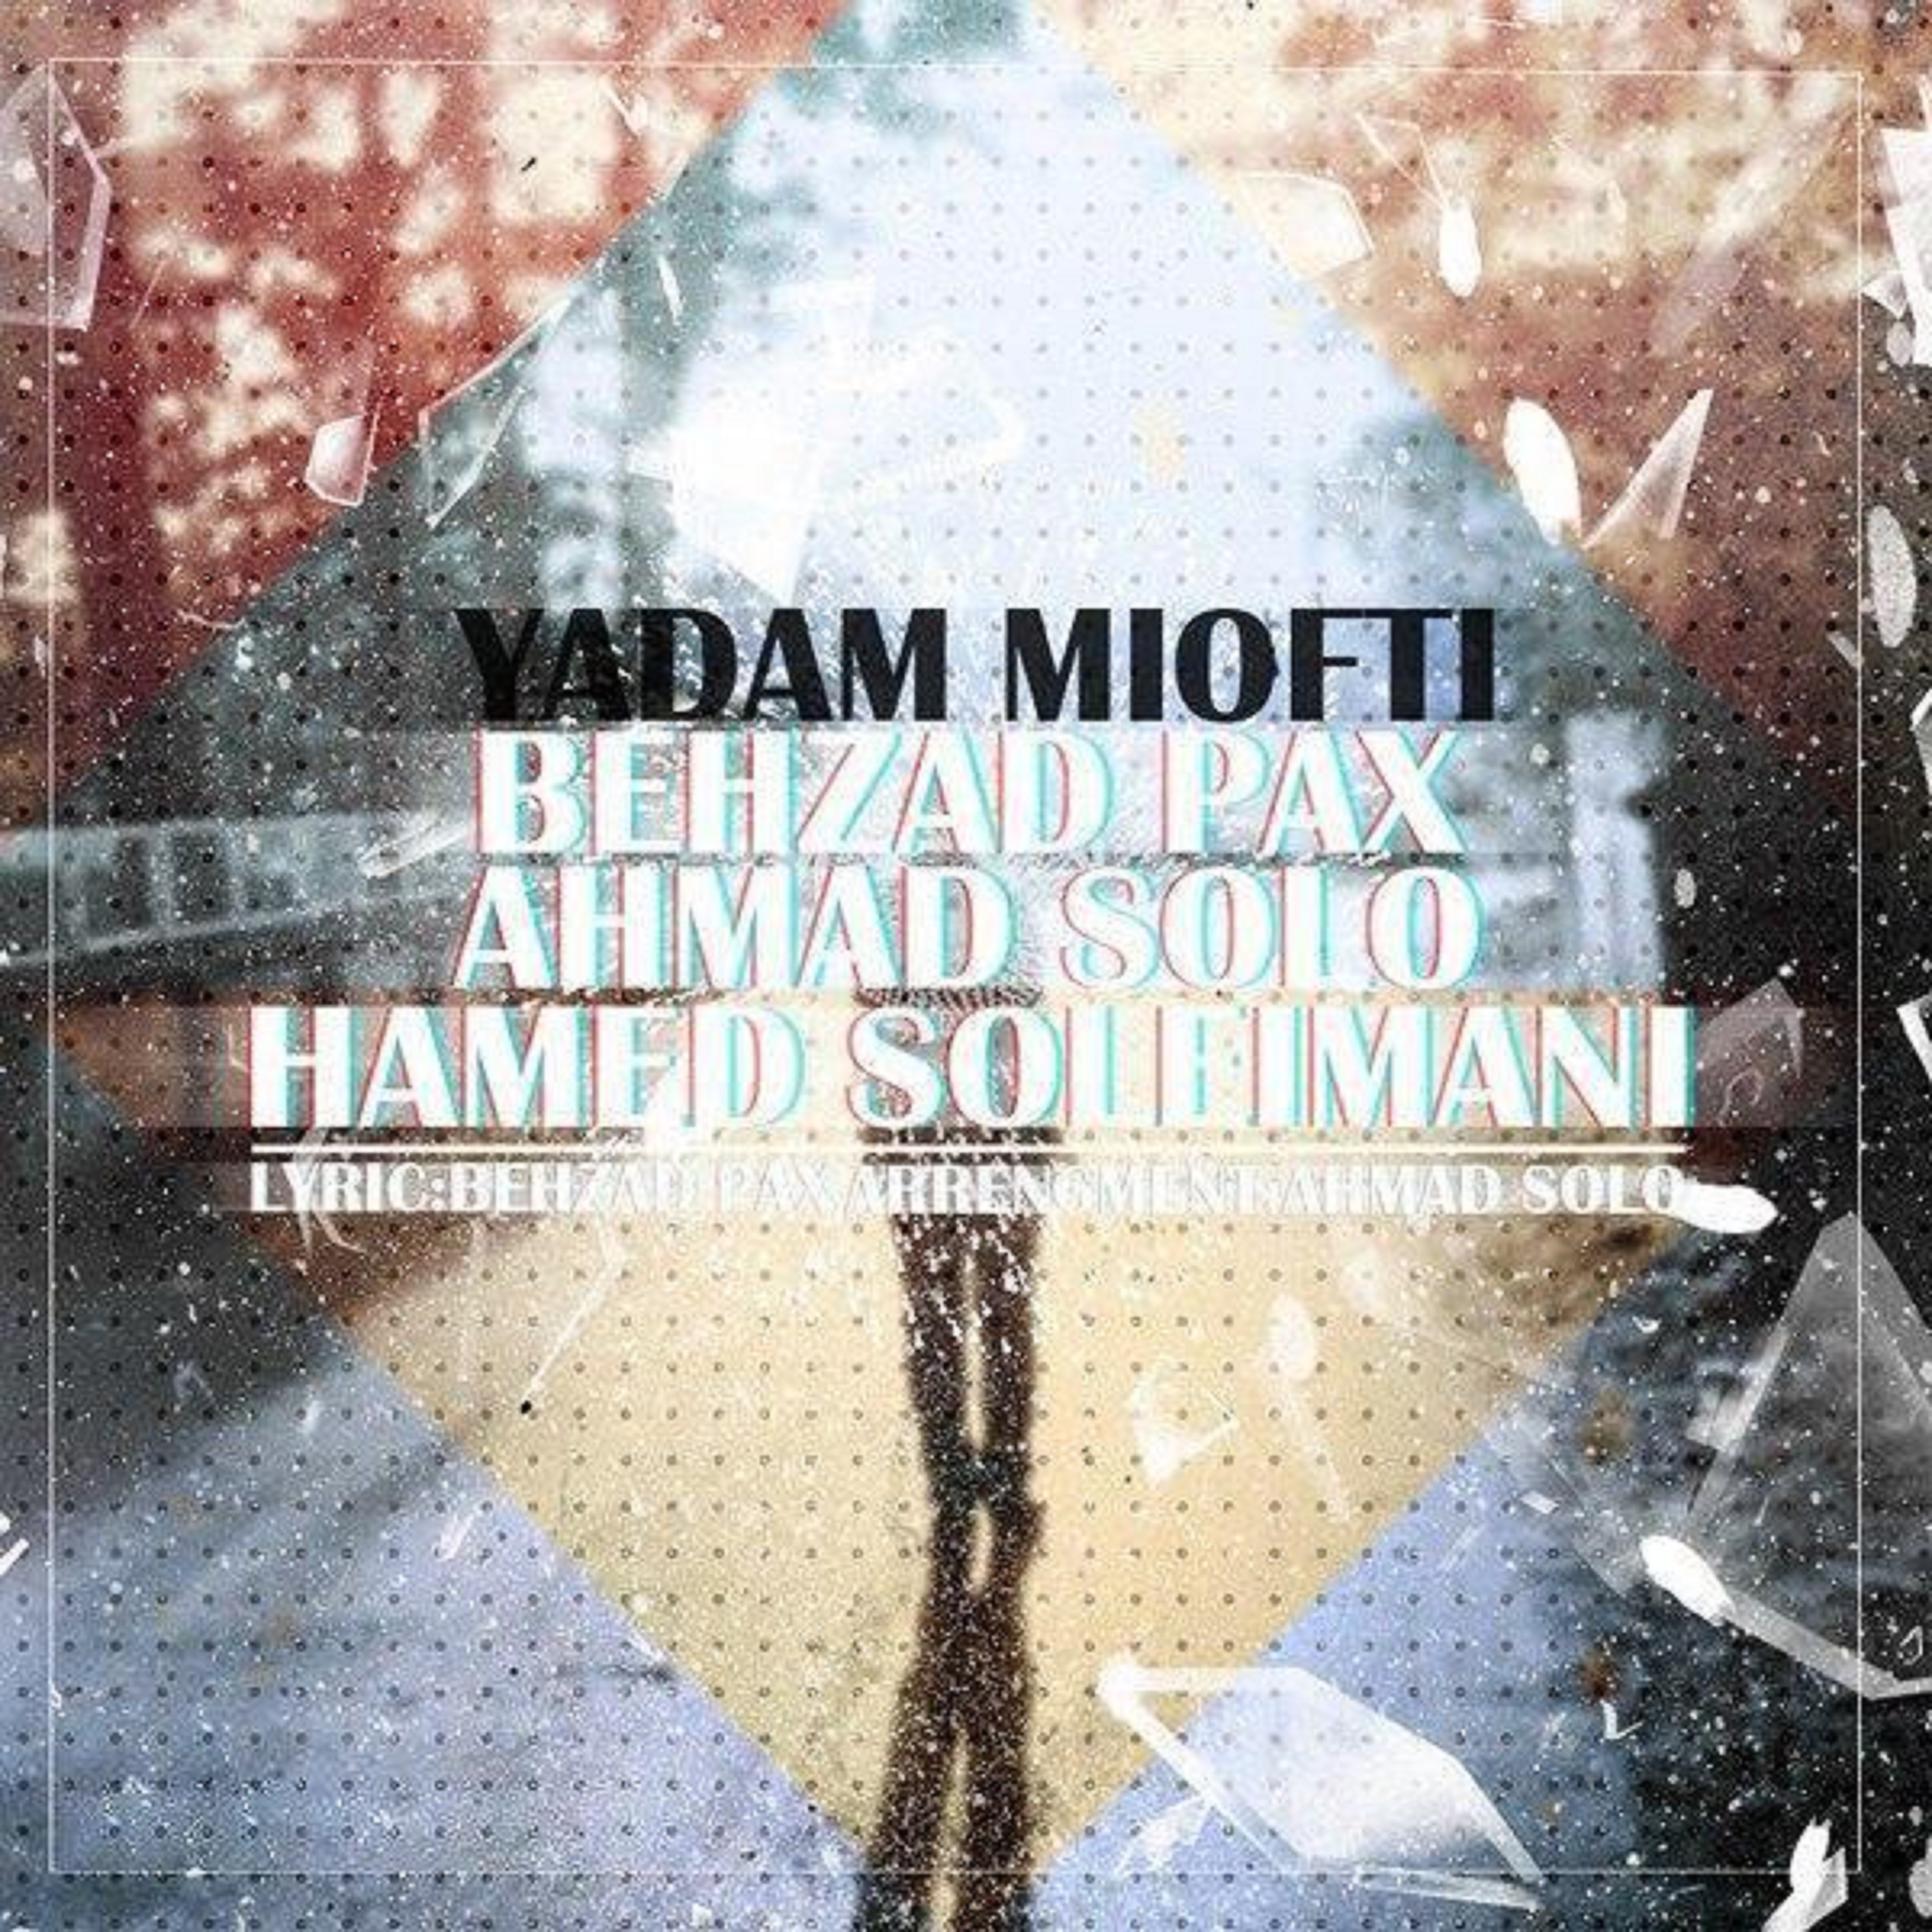  دانلود آهنگ جدید احمد سلو - یادم میافتی | Download New Music By Ahmad Solo - Yadam Miofti (feat. Behzad Pax & Hamed Soleimani)